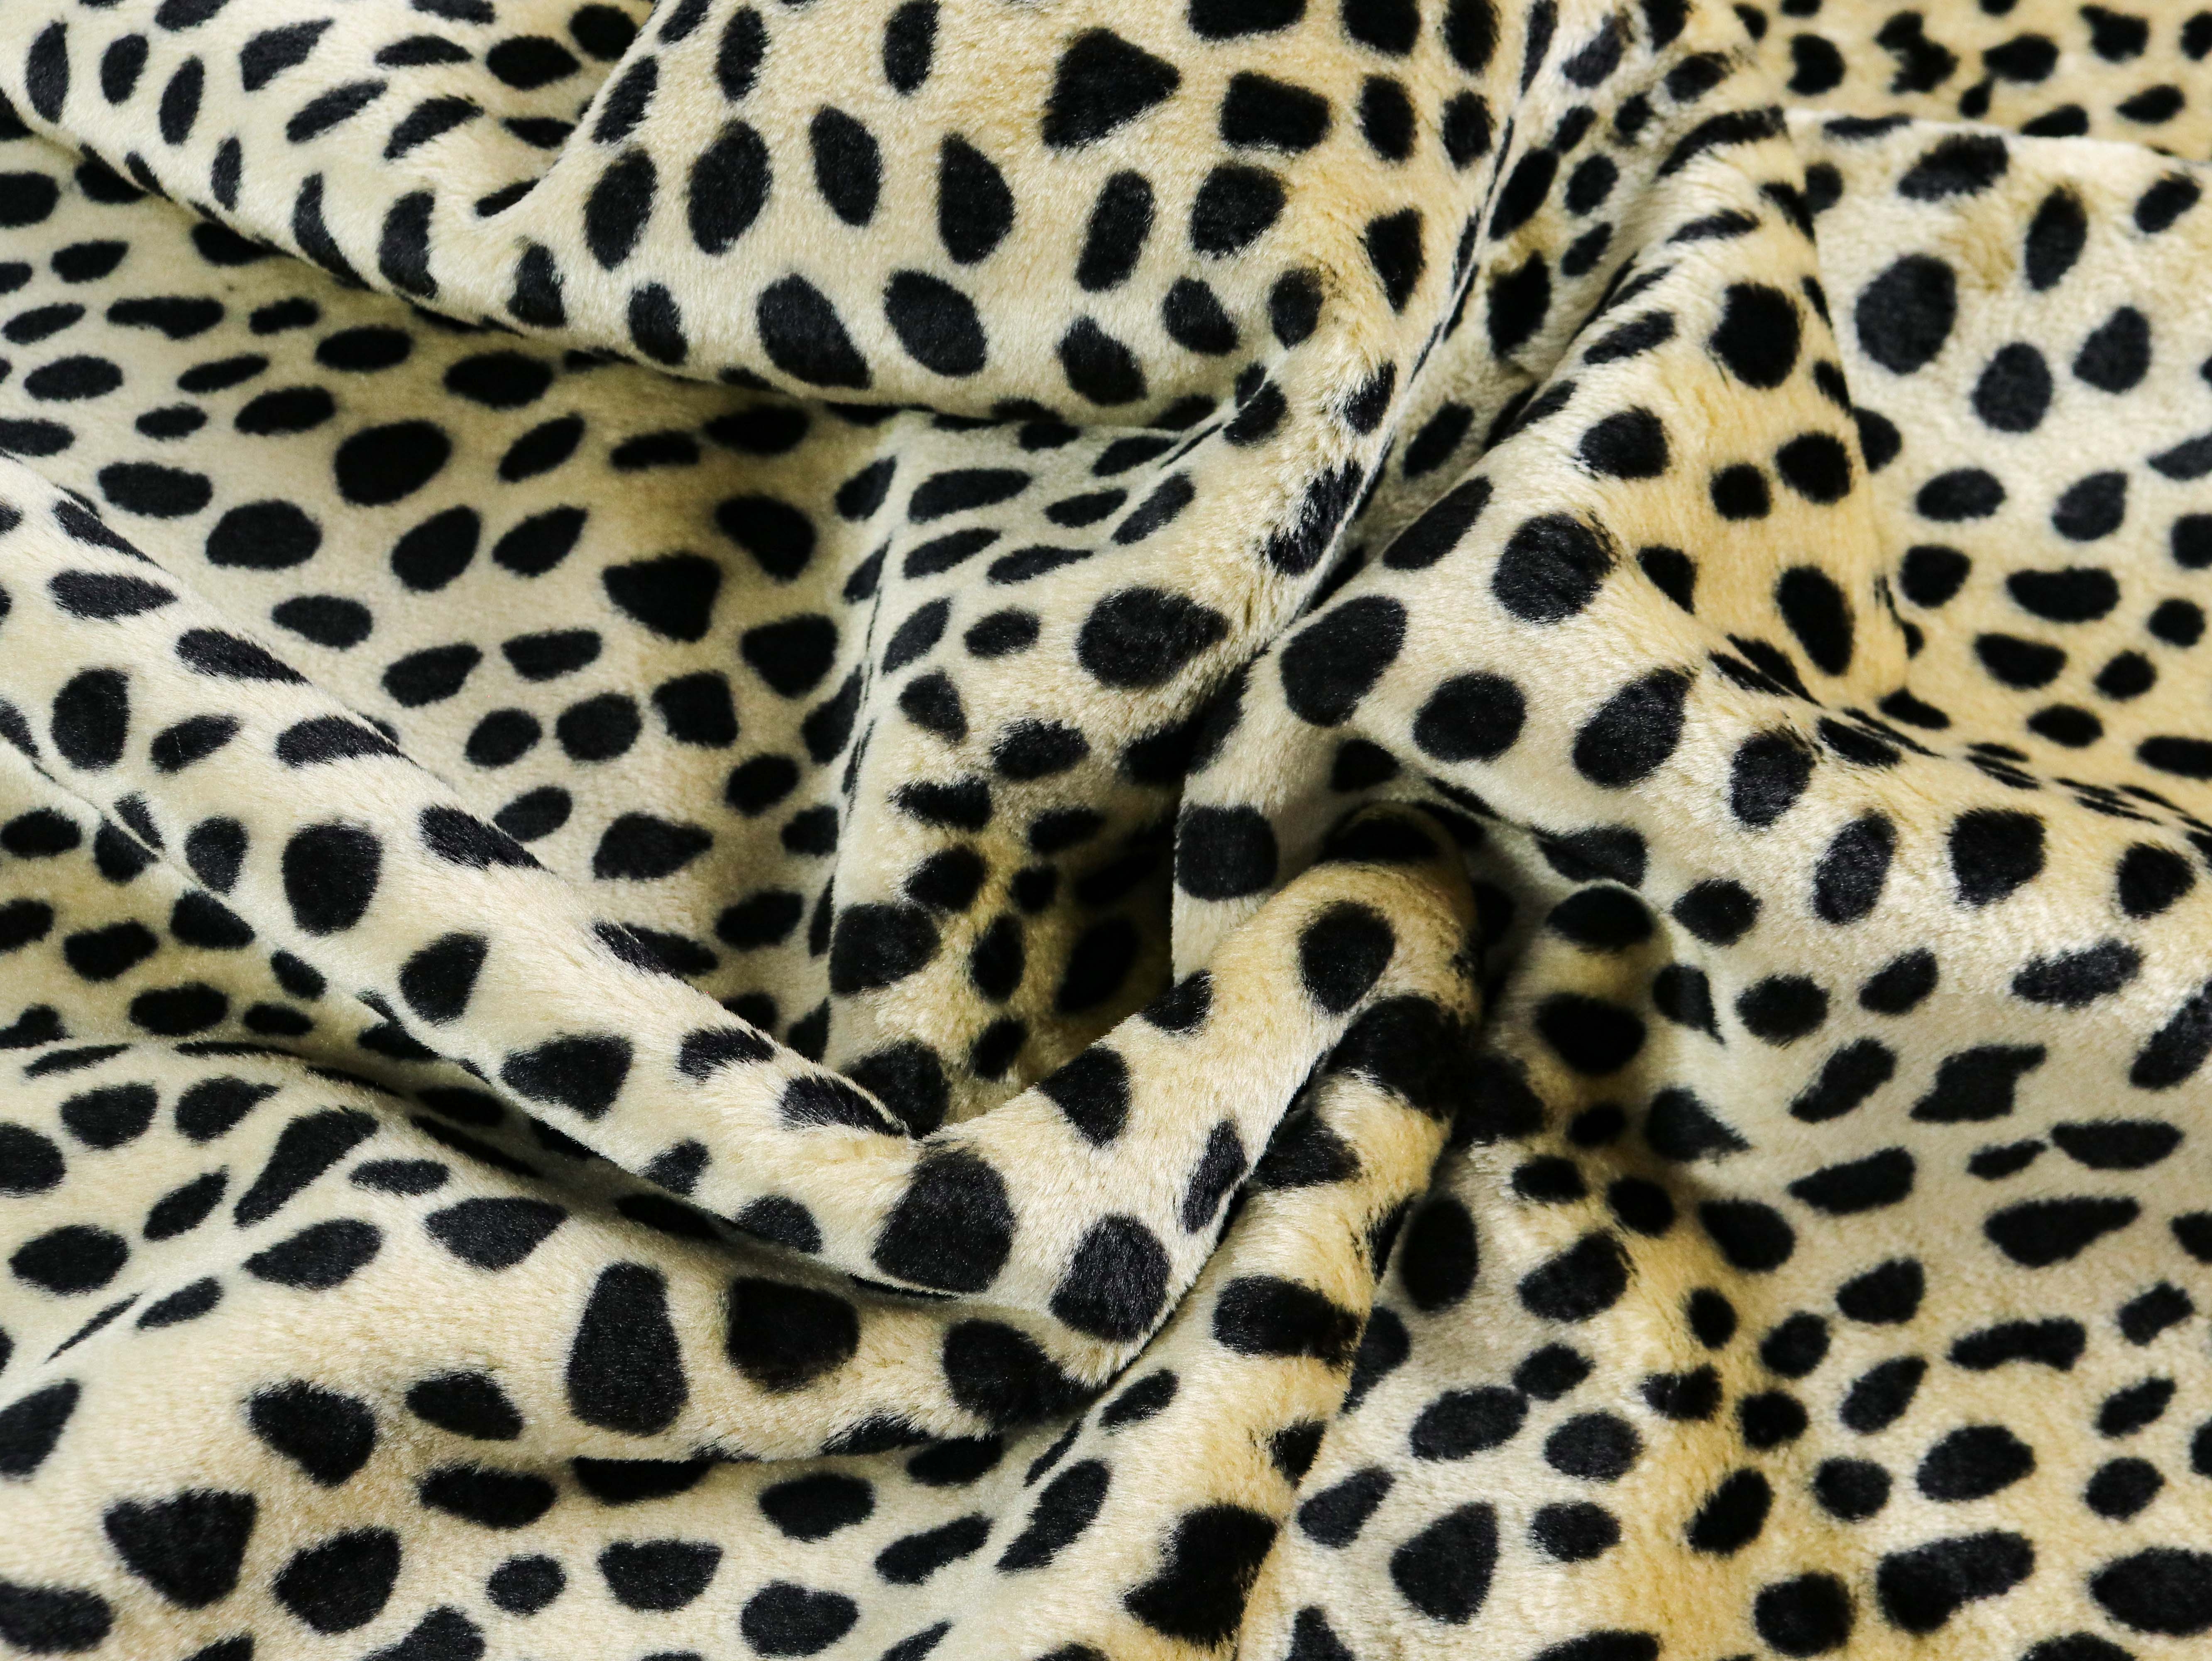 PLÜSCH Leopard Katze schwarze Punkte auf BEIGE